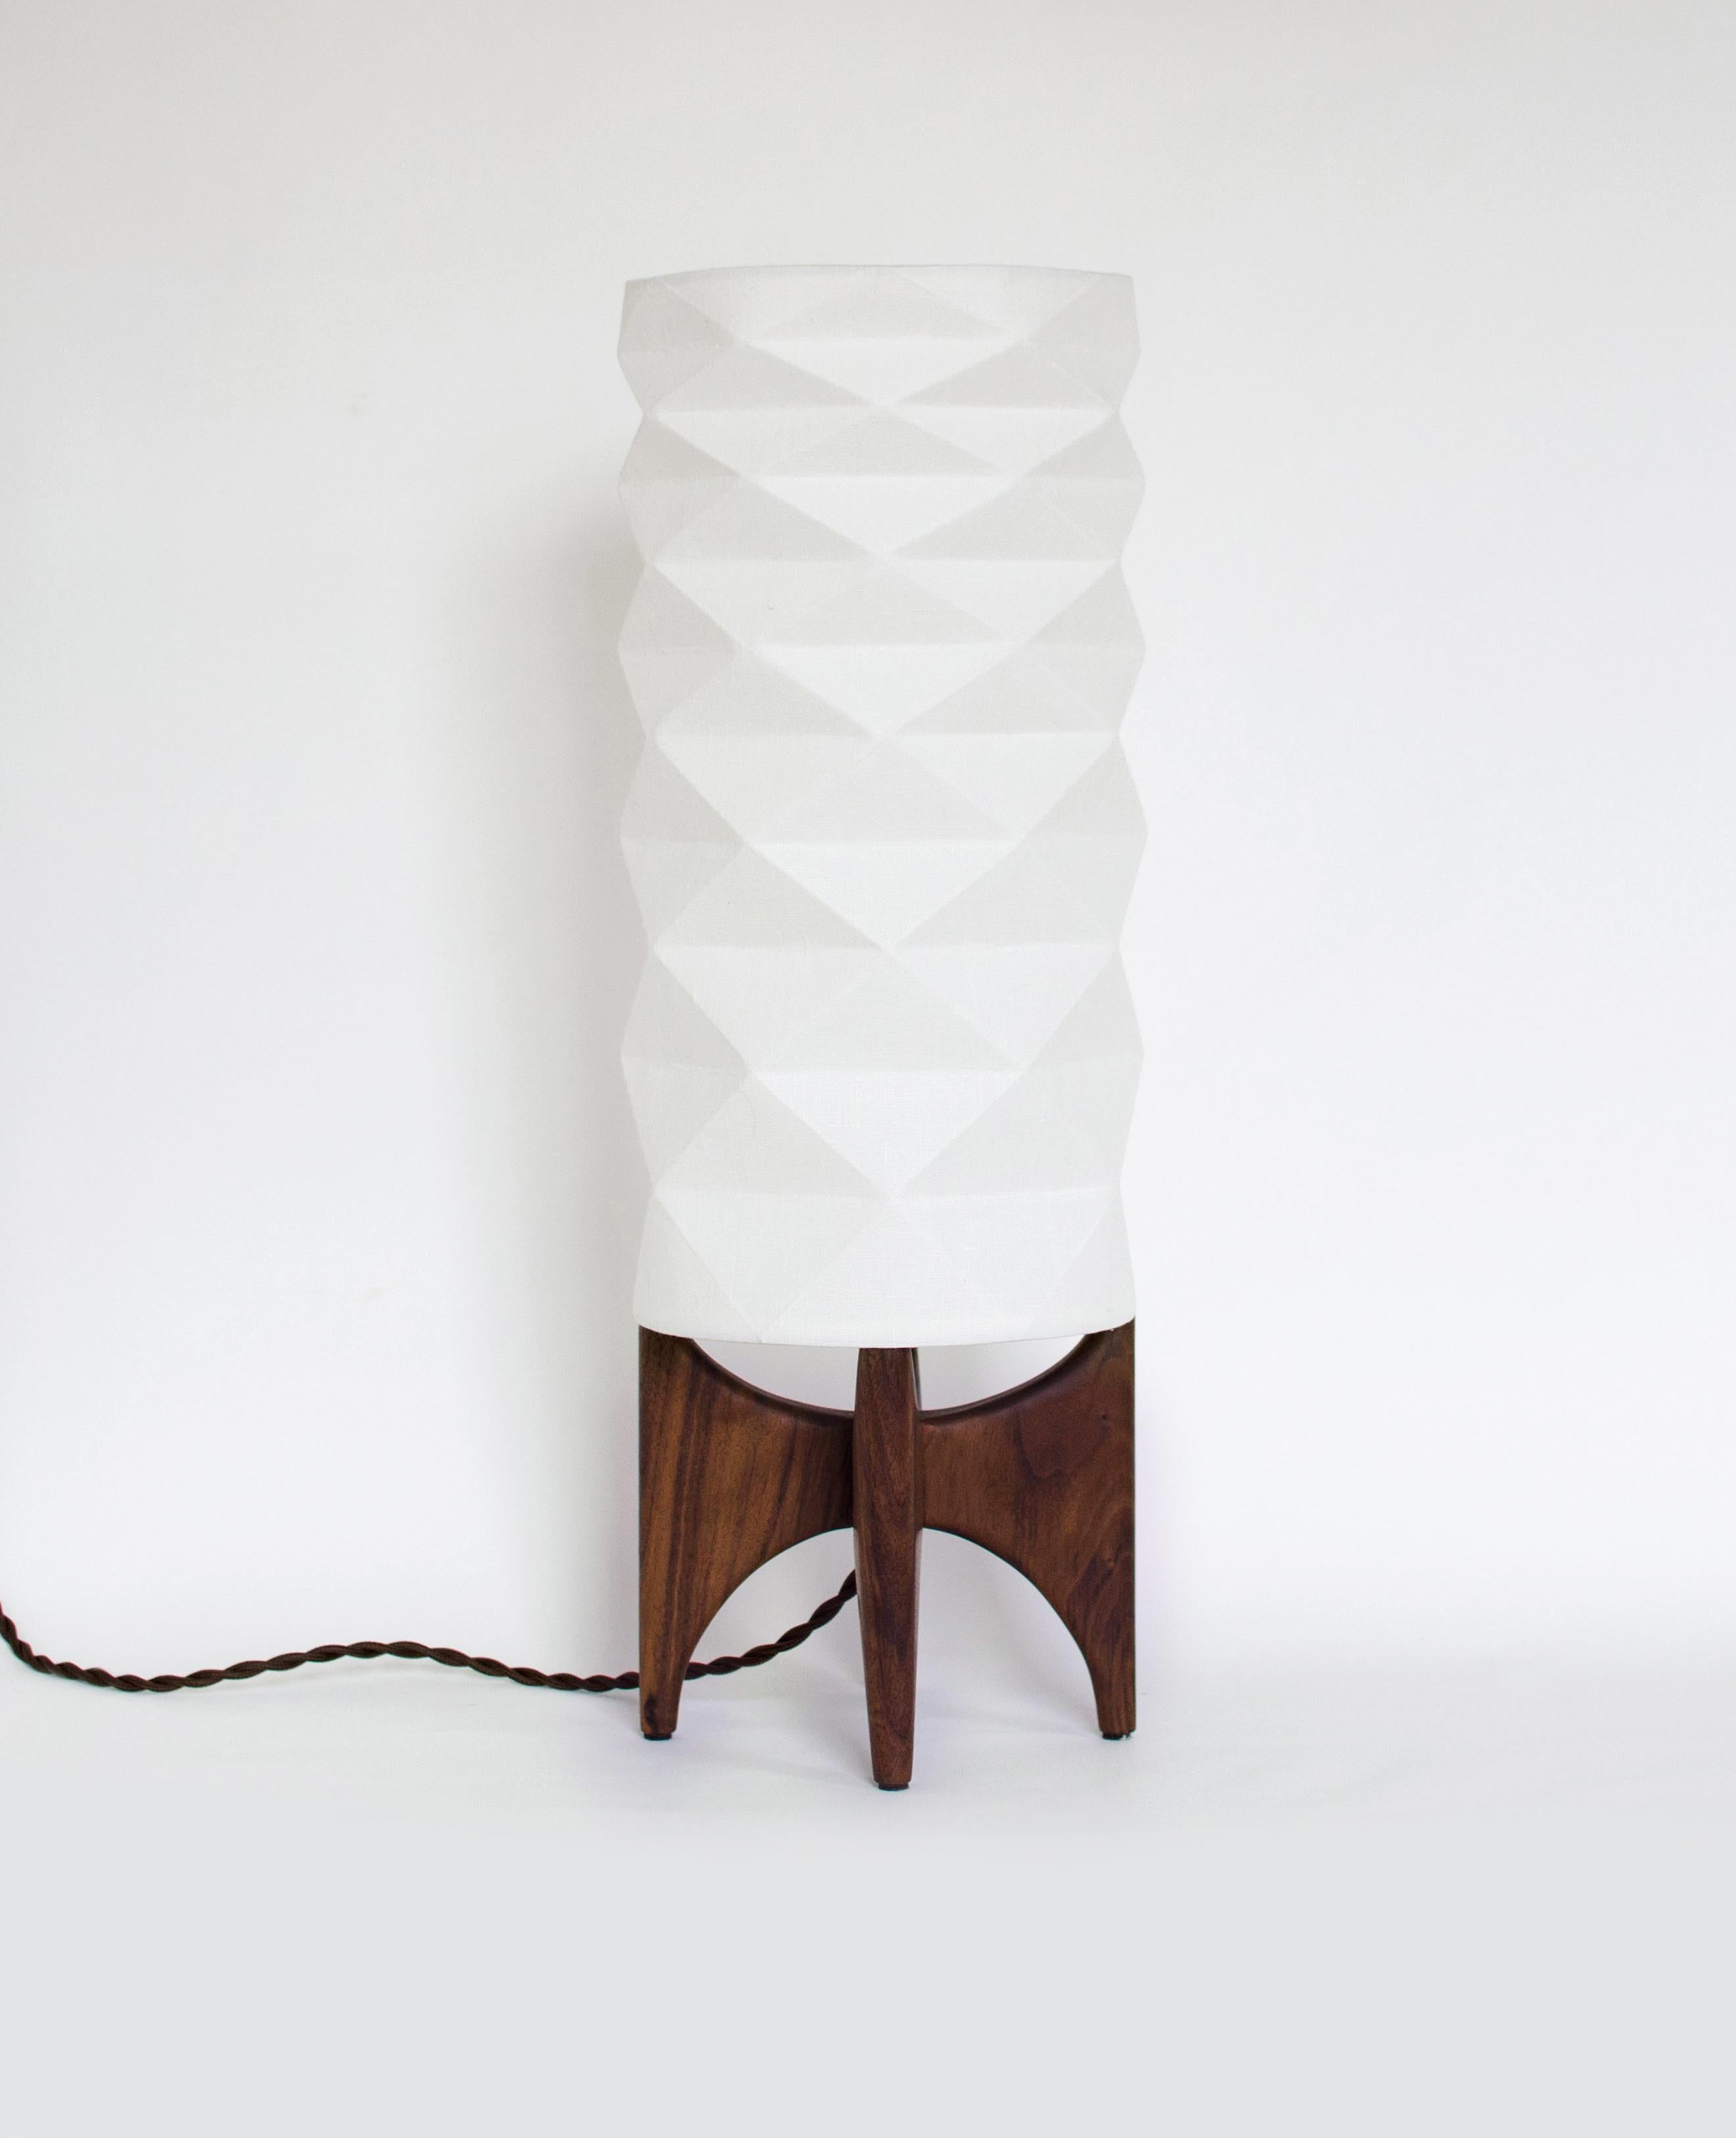 La lampe TōRō est une lampe de table unique qui apportera à votre intérieur une pièce fonctionnelle de style moderne-rétro. L'abat-jour inspiré de l'origami est fabriqué en tissu de lin laminé, ce qui permet d'obtenir une lumière ambiante à la fois